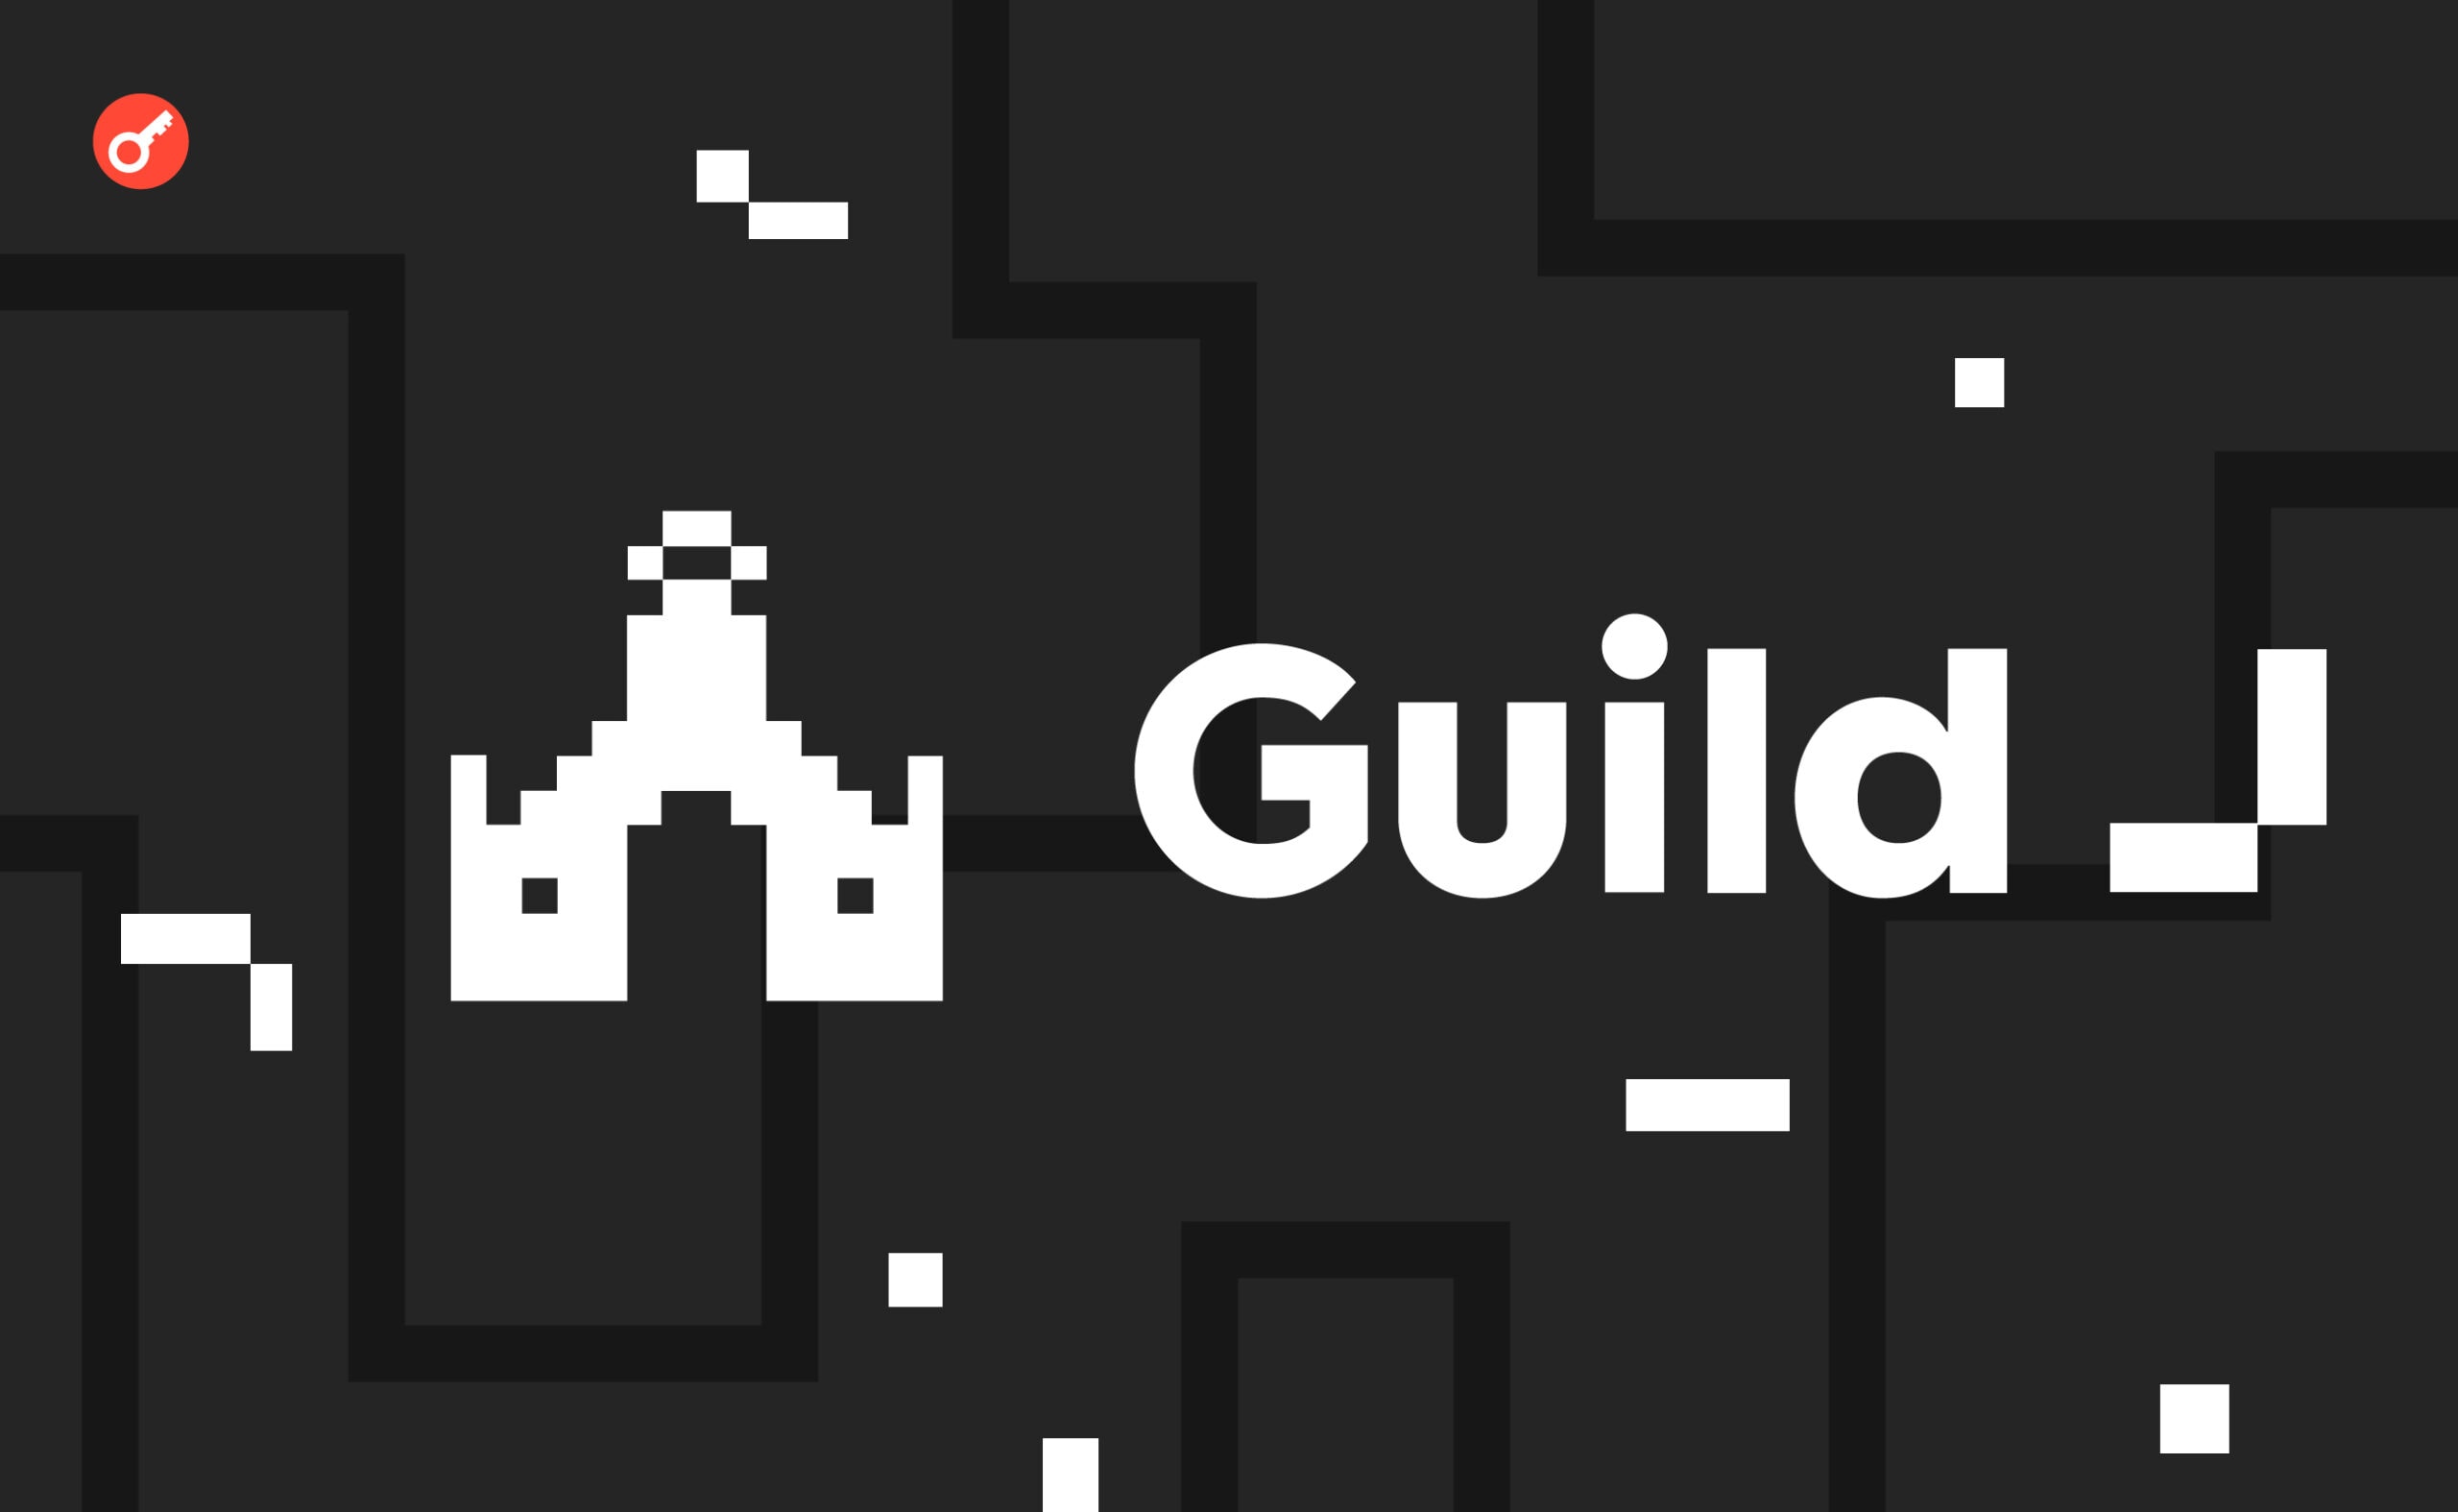 Guild: інструкція з проходження активностей, для отримання можливого дропу. Головний колаж статті.